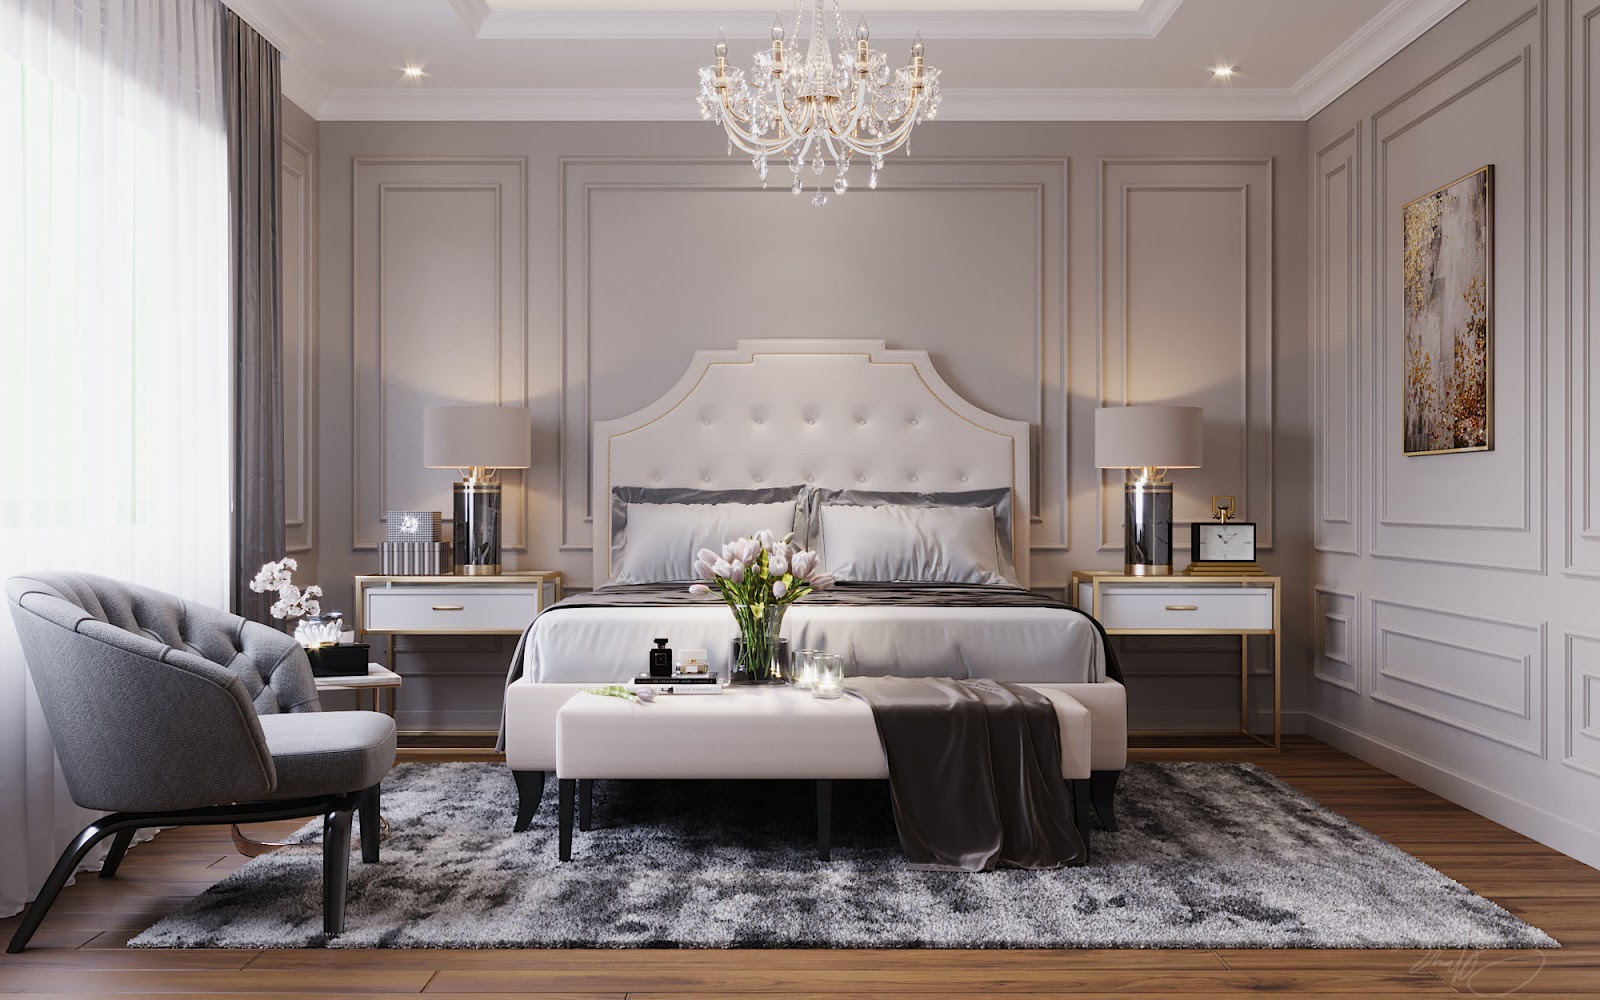 Phòng ngủ được thiết kế theo phong cách tân cổ điển sang trọng, tinh tế với gam màu sáng